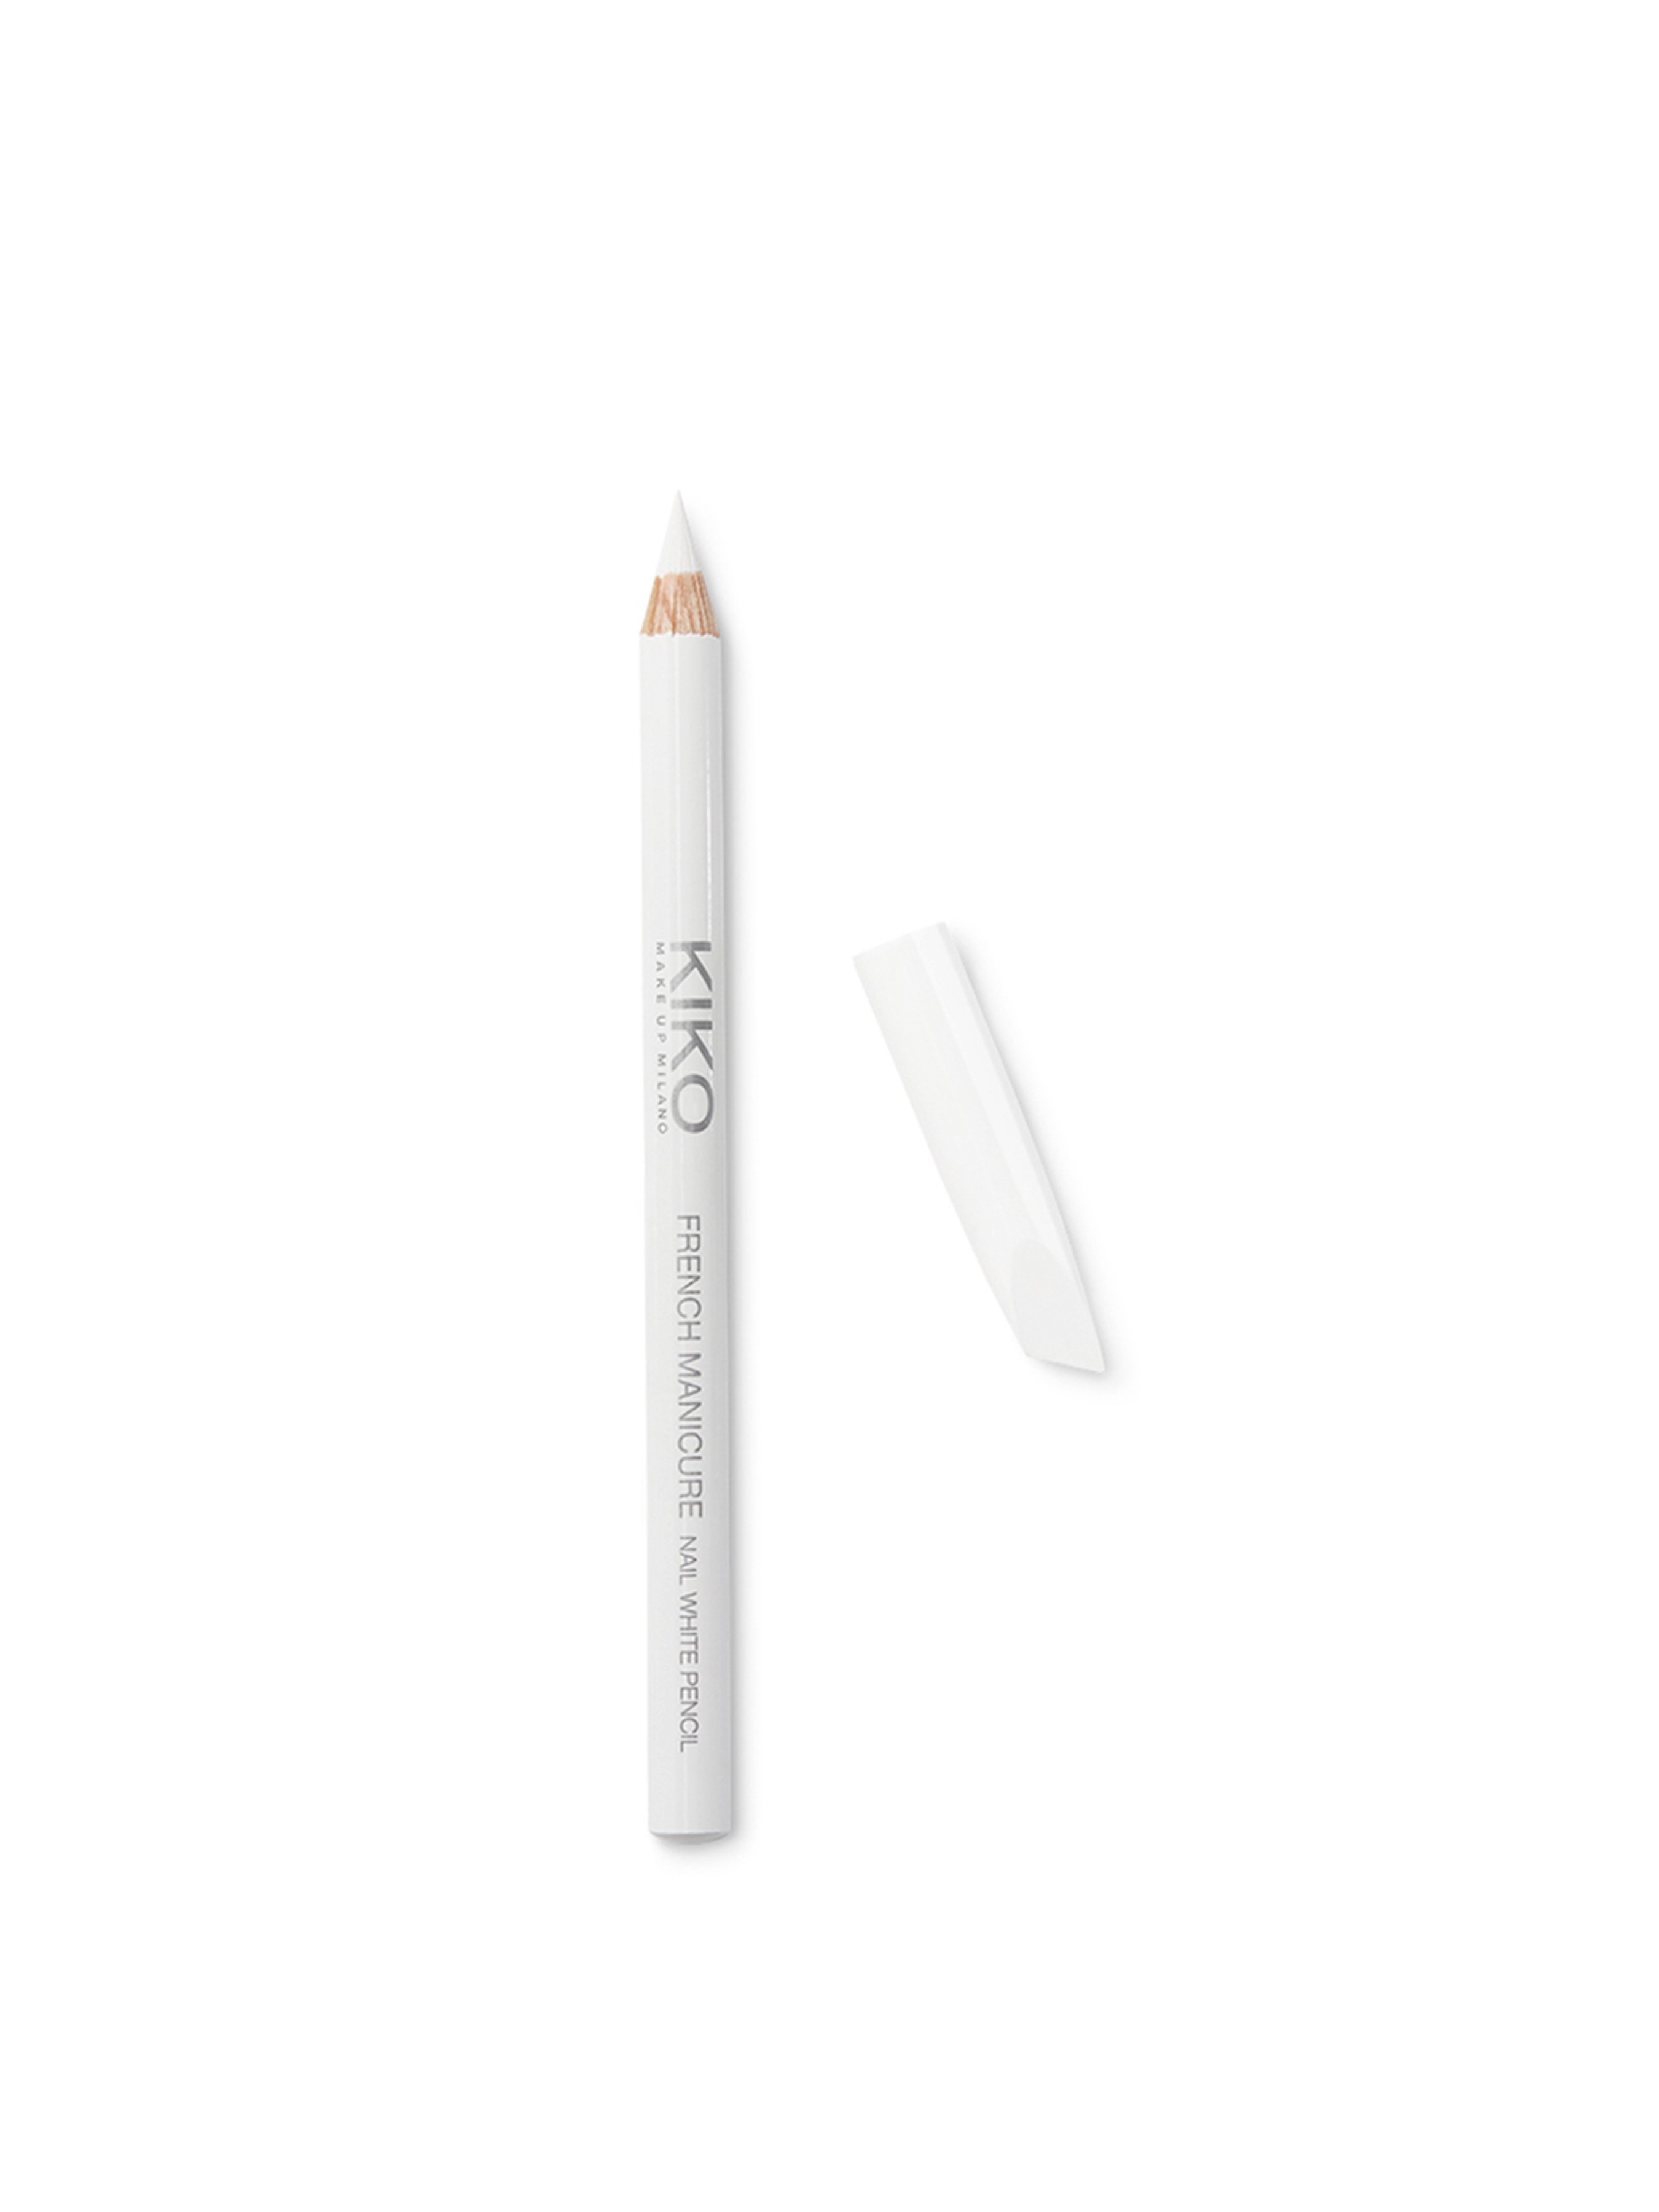 MAVALA nail whitening pen buy online | beeovita.com